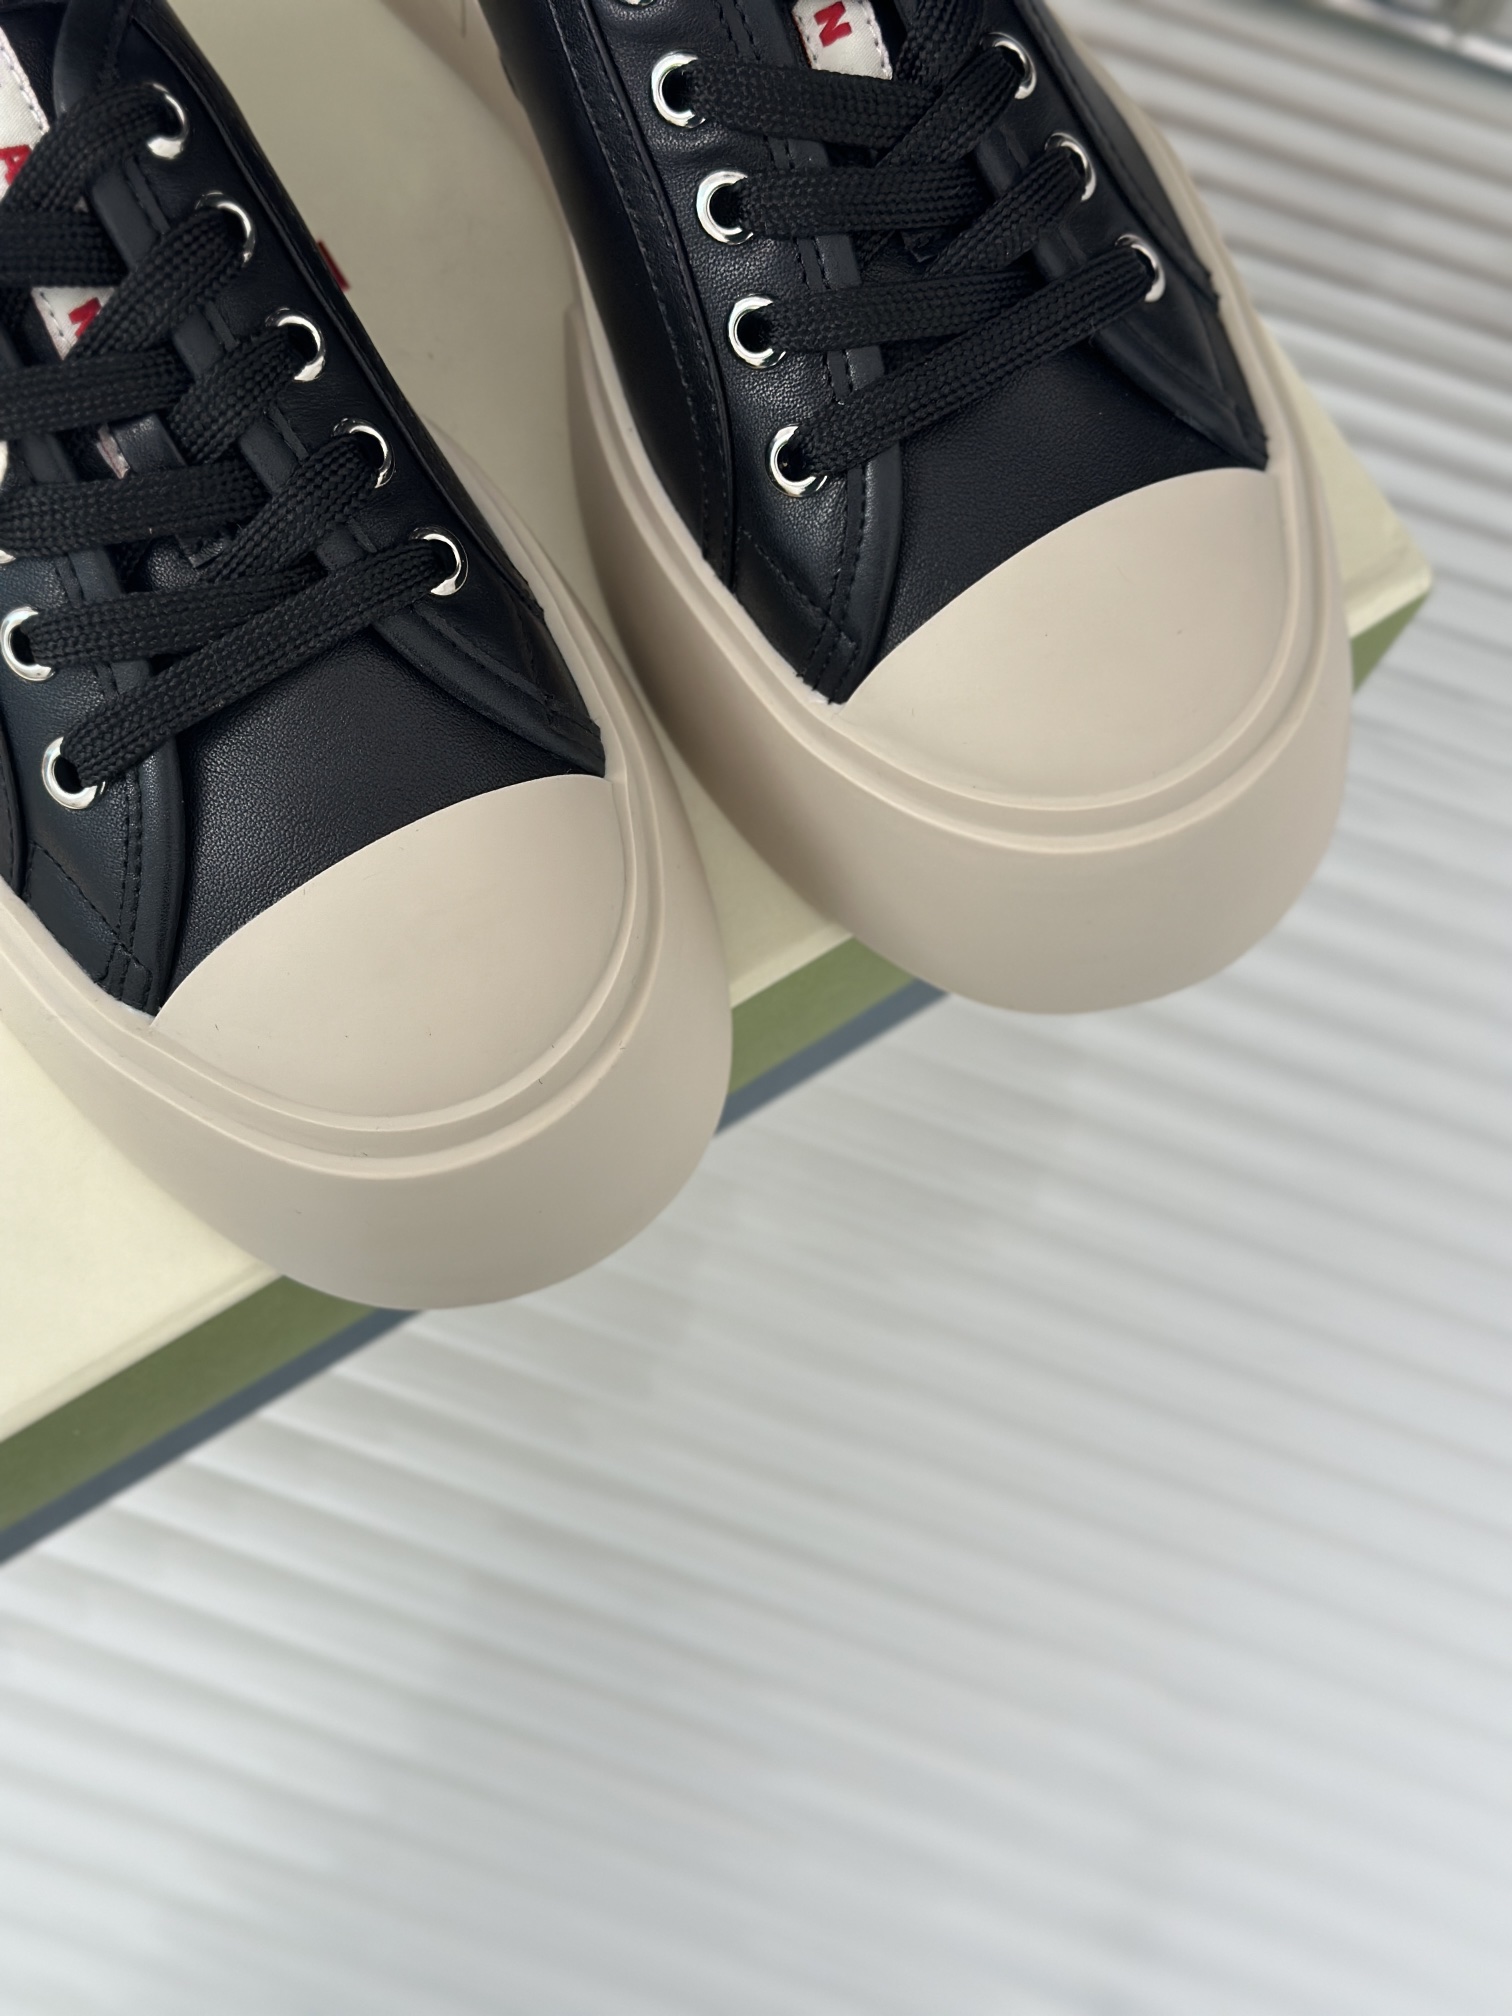 Marni玛尼23S经典四季厚底系带半拖鞋鞋型整体特别简洁还复古配色干净不过时是一双舒适和质感并存的小白